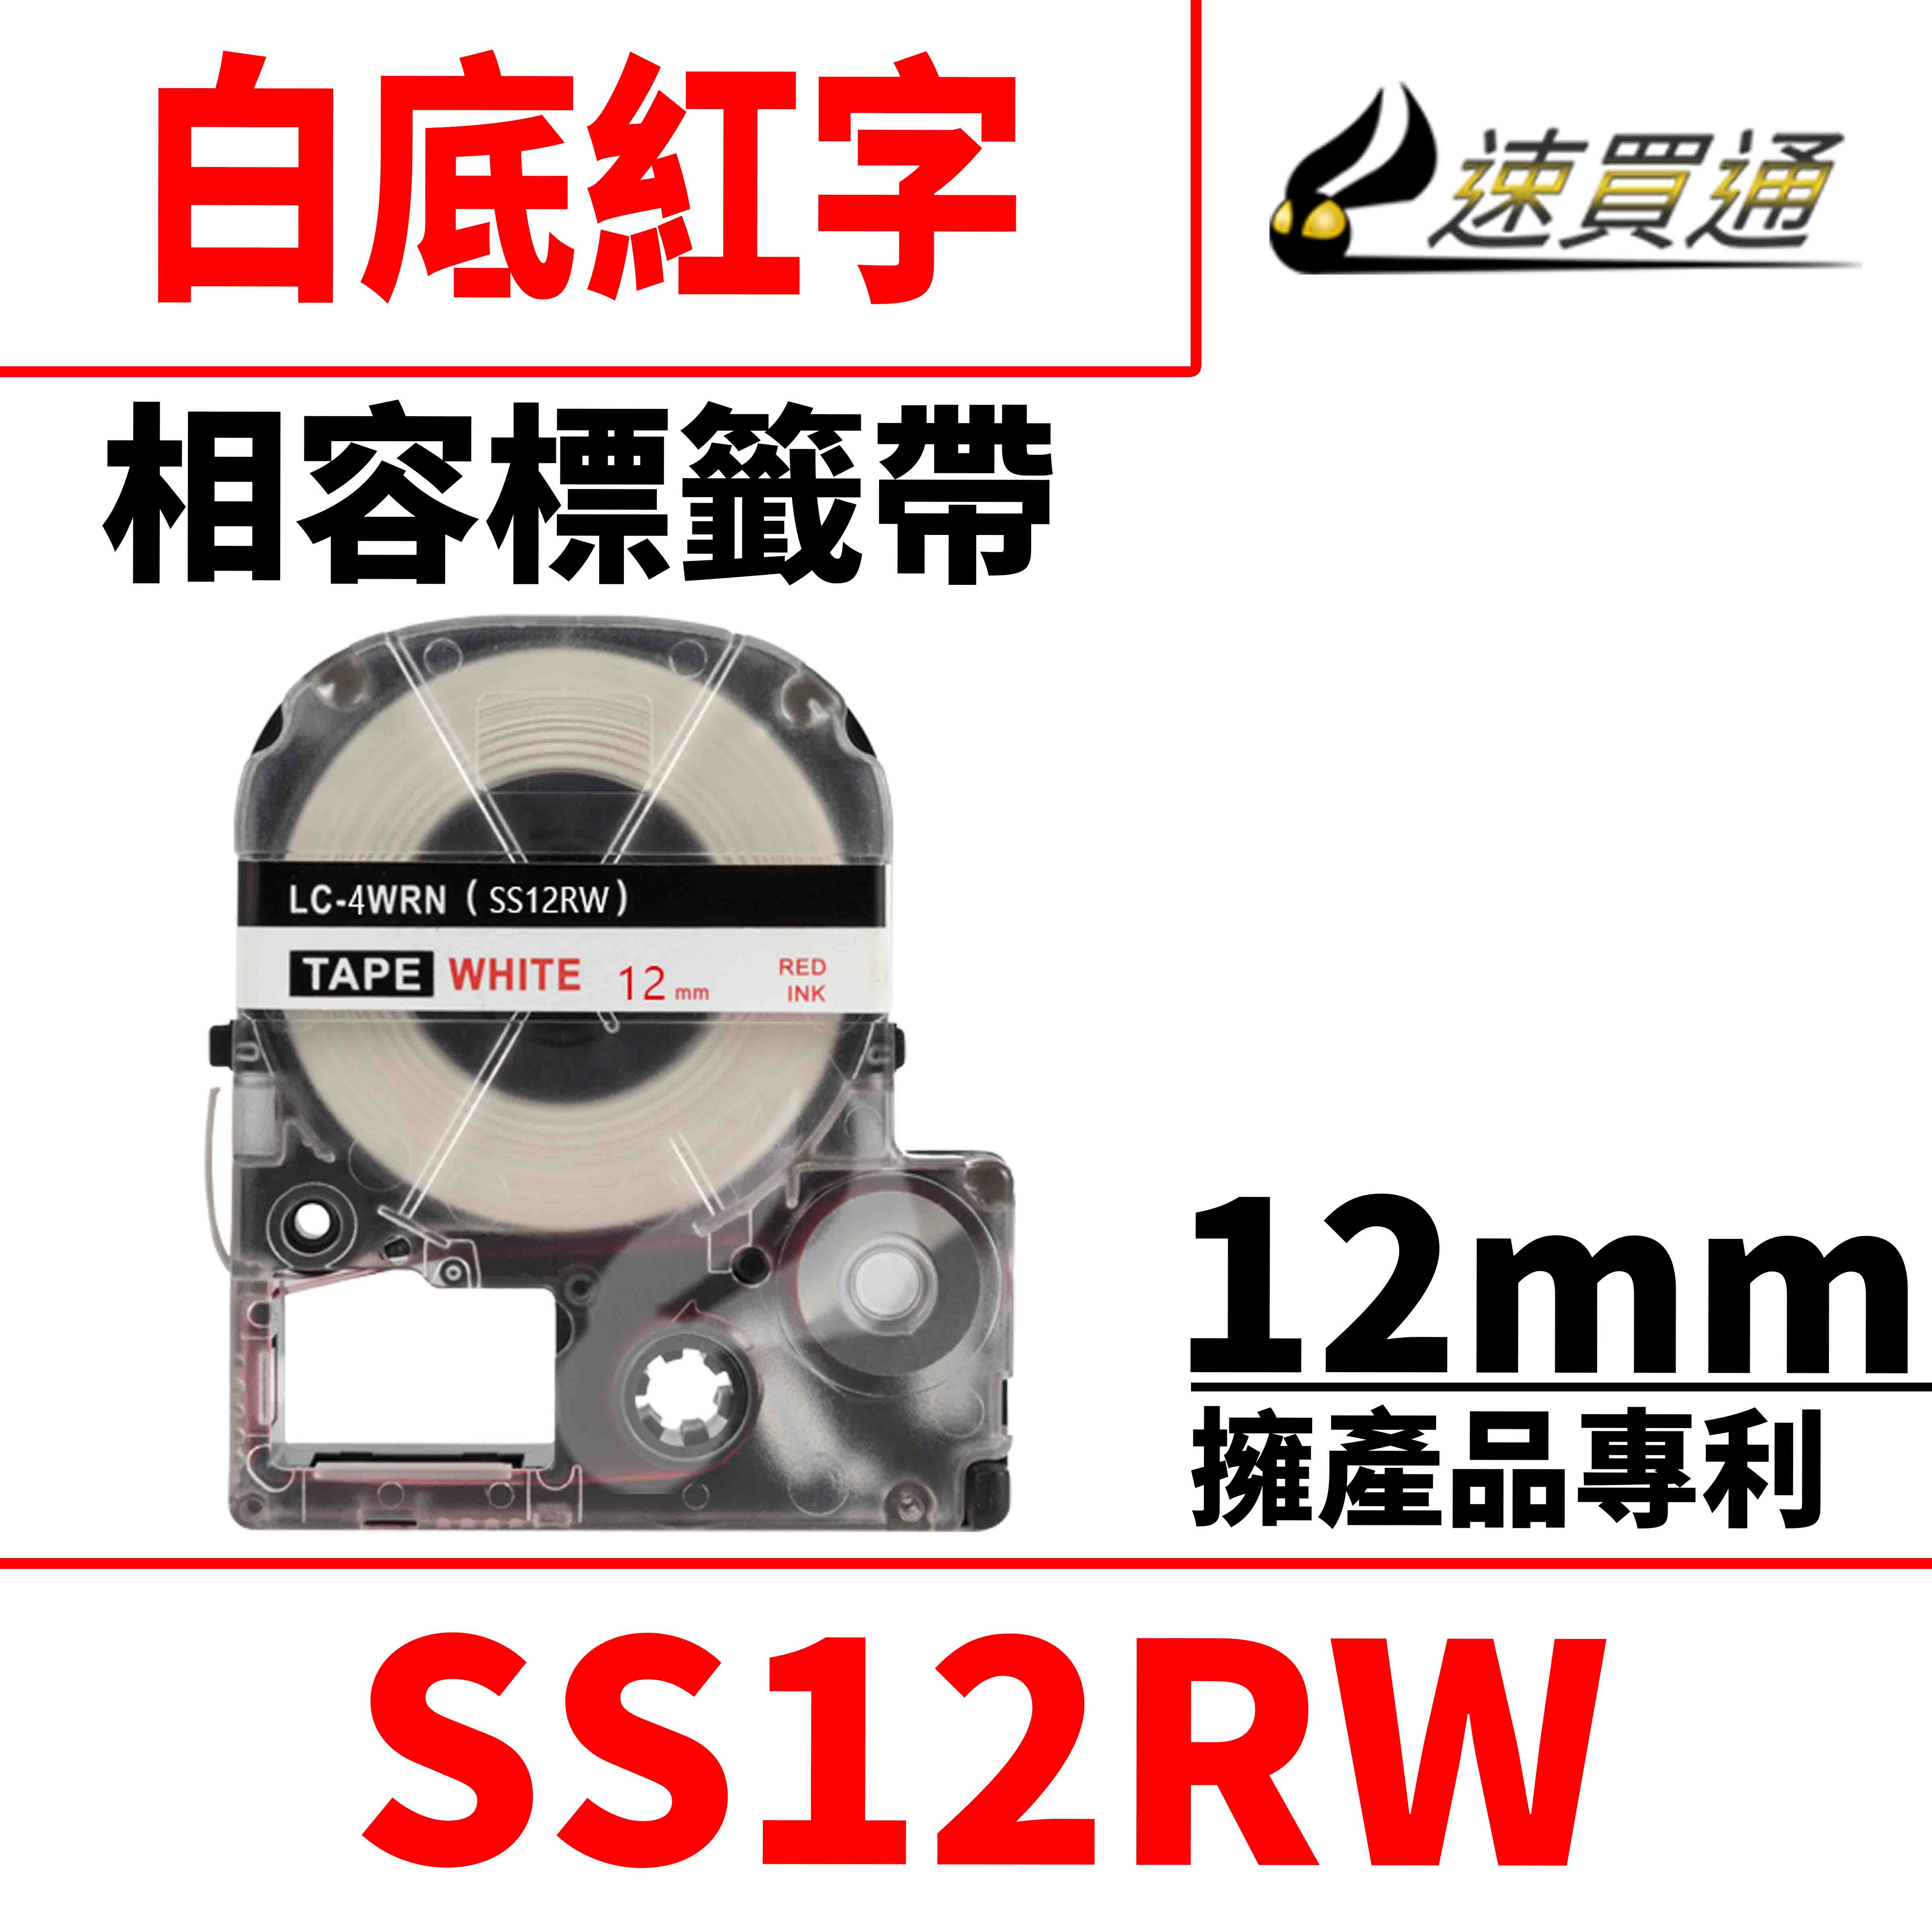 【速買通】EPSON LC-4WRN/LK-4WRN/SS12RW/白底紅字/12mmx8m 相容標籤帶